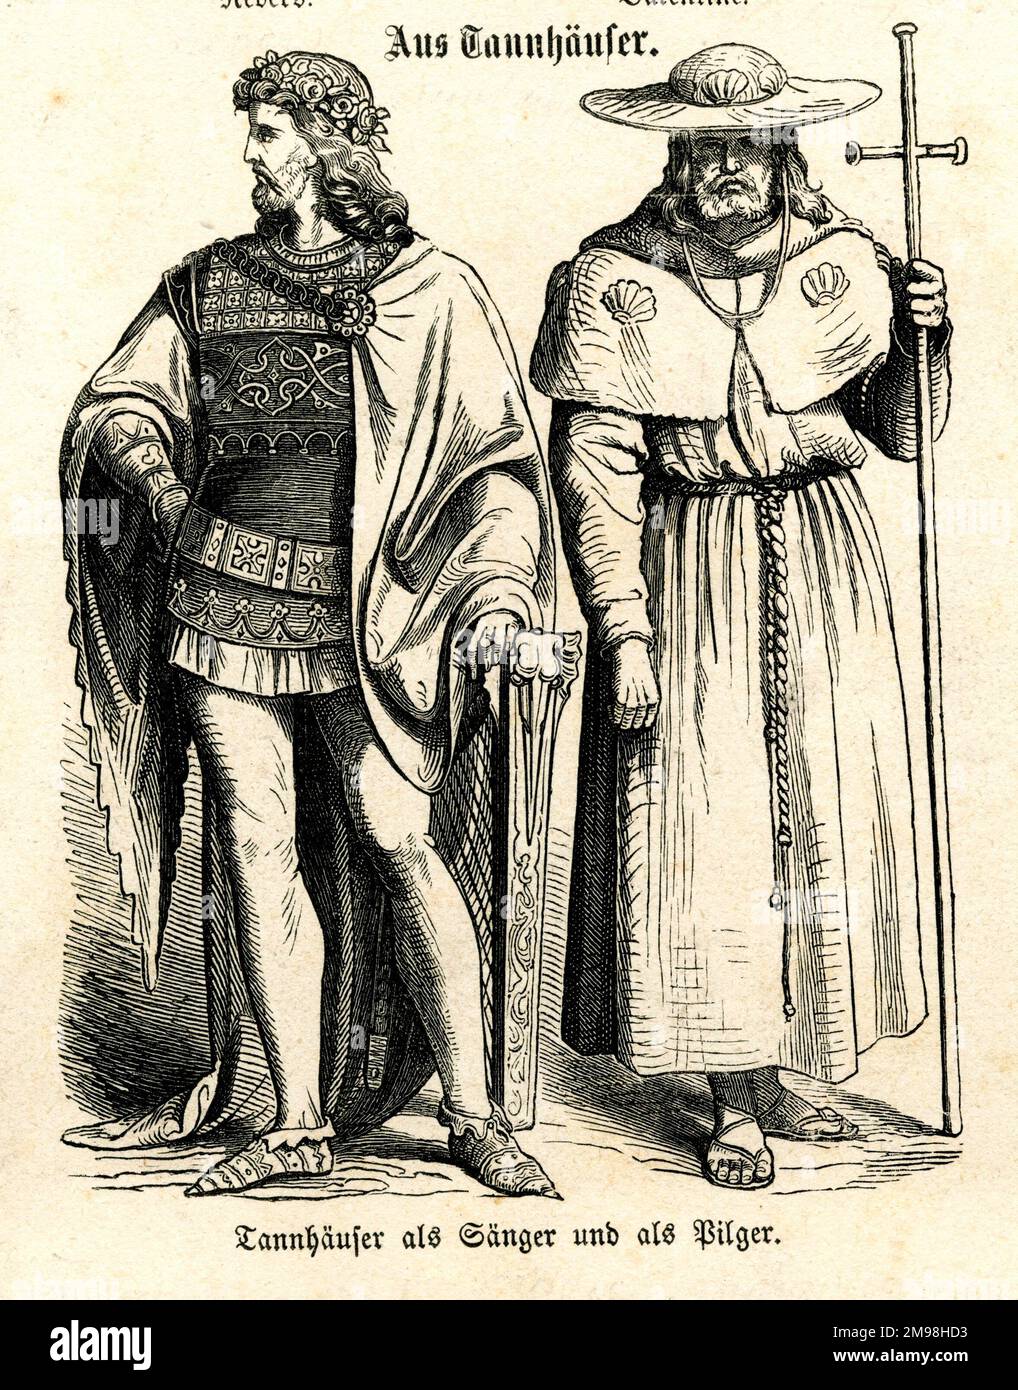 Deutsches Theaterkostüm - Tannhauser als Saenger und als Pilger (Tannhauser als Singer und als Pilgrim). Er war ein deutscher Minnesinger und Dichter aus dem 13. Jahrhundert, der durch Wagners Oper noch berühmt wurde. Stockfoto